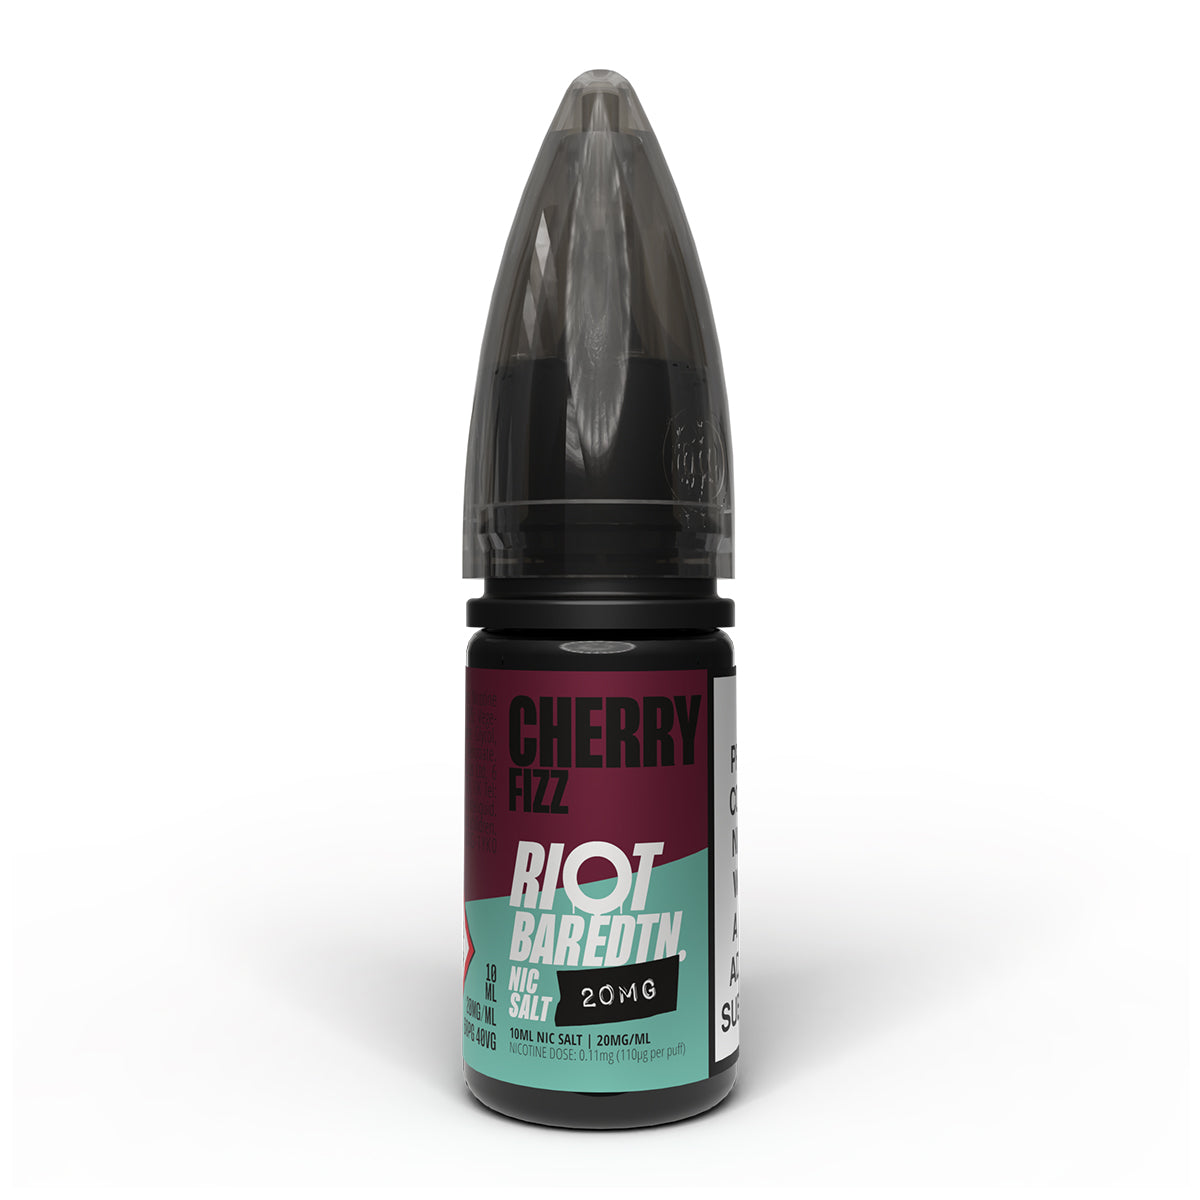 Cherry Fizz 10ml Nicotine Salt 20mg by Riot Bar Edtn